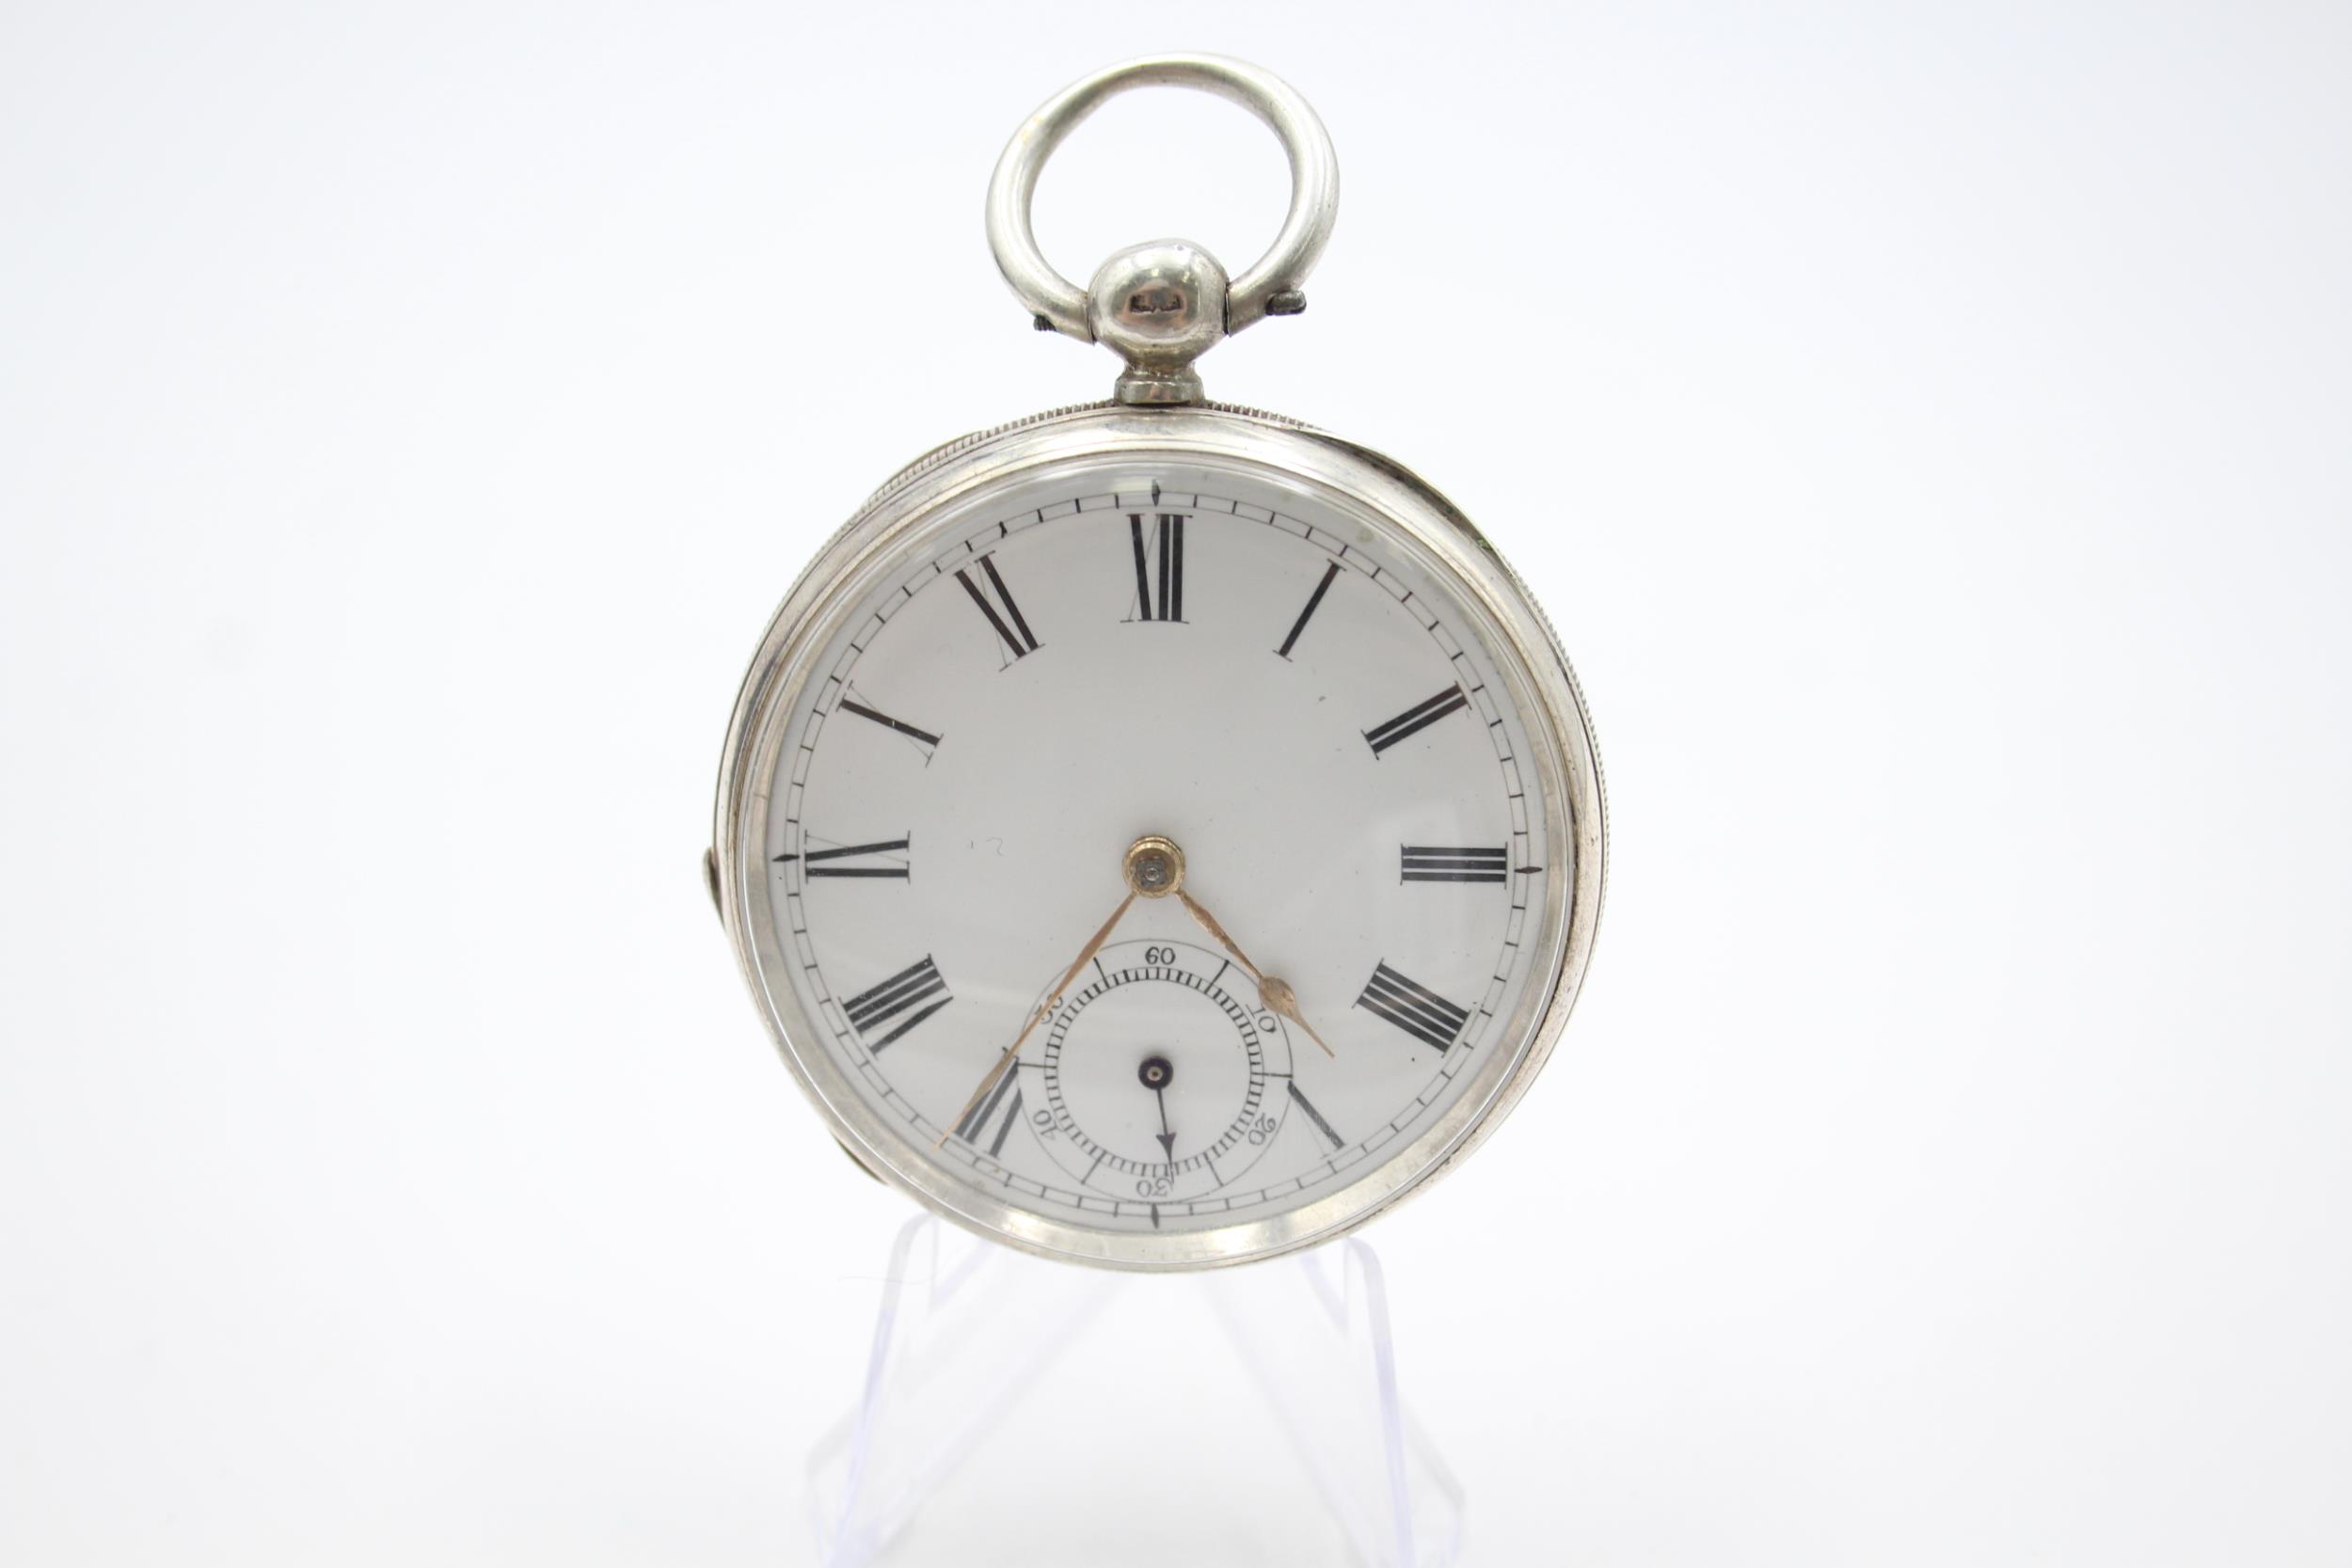 WALTHAM Sterling Silver Gents Vintage Pocket Watch Key-wind WORKING - WALTHAM Sterling Silver